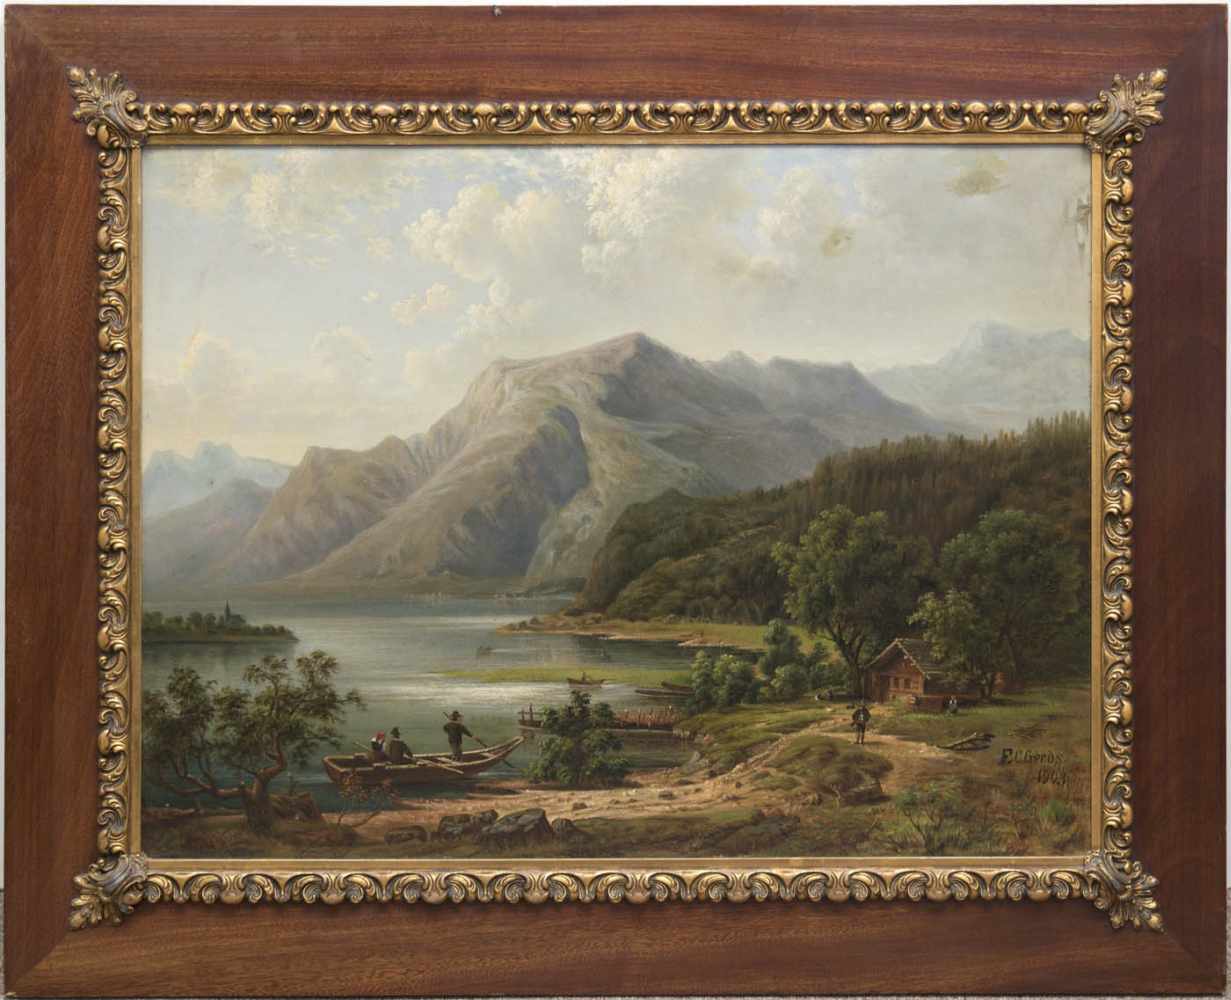 Gerds, F.C. "Bergsee mit Ruderer auf dem See", Öl/Karton, sign. u.r. und dat. 1903, 60x80 cm,